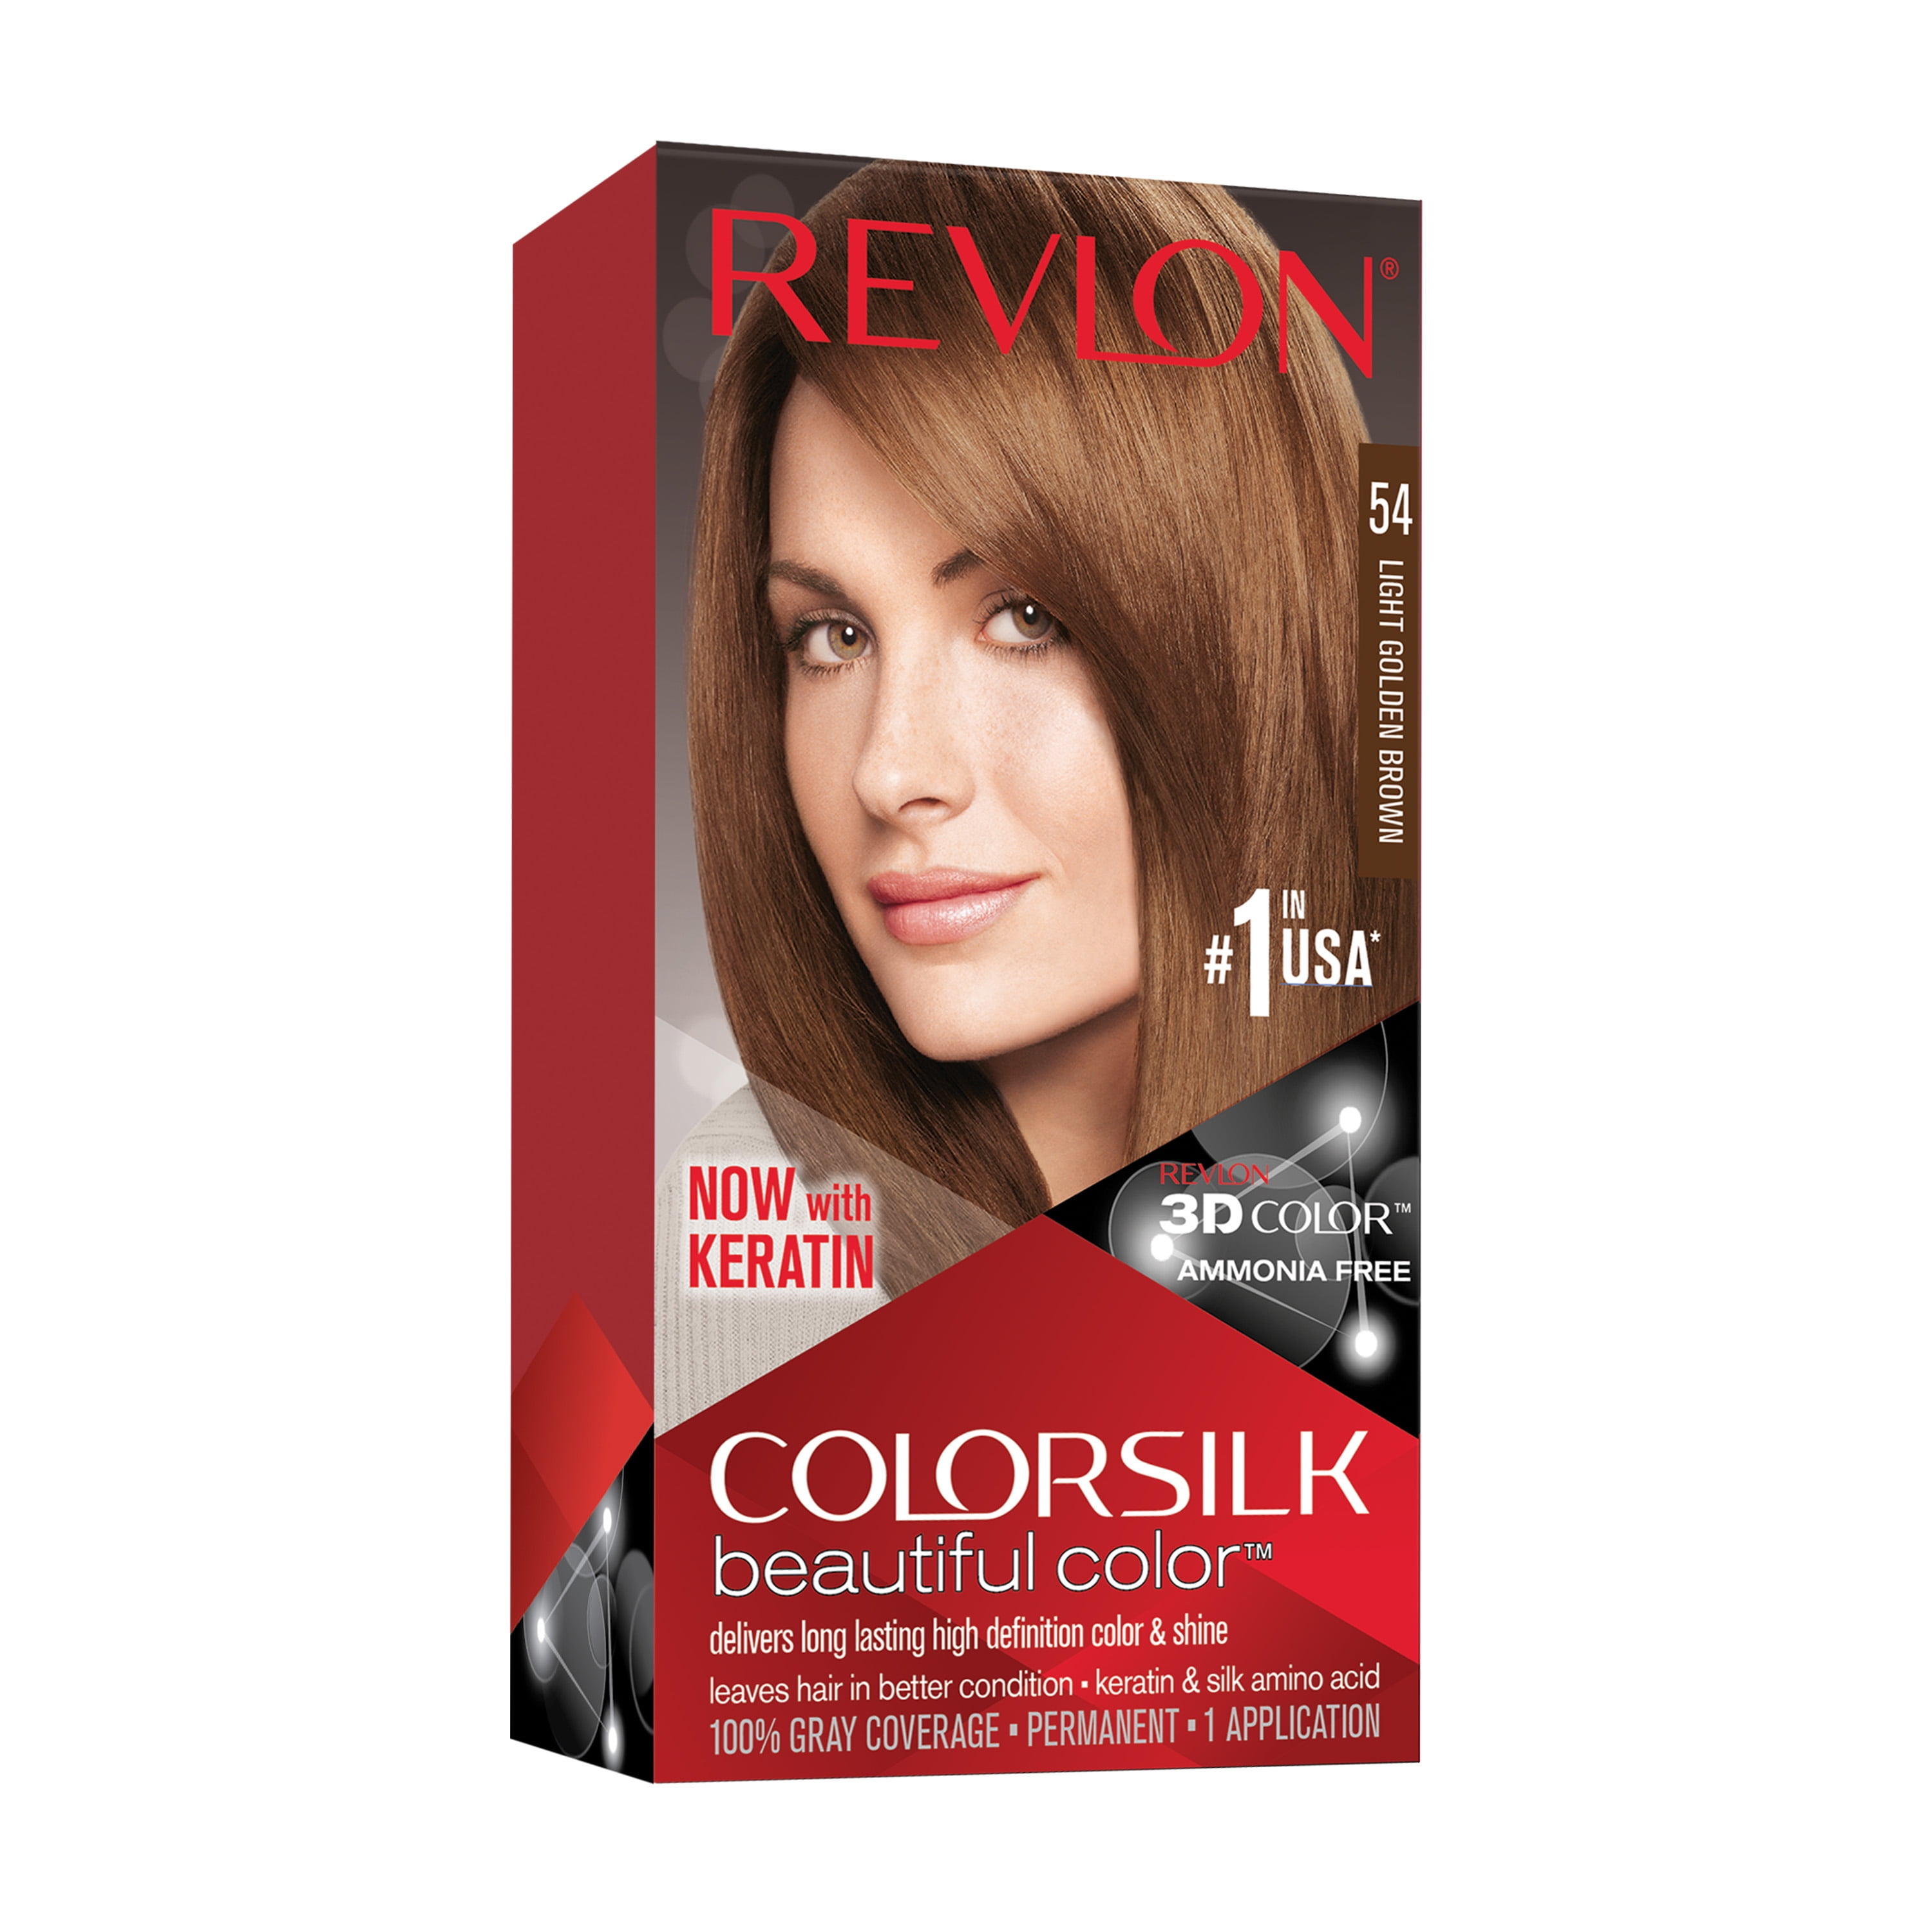 Revlon ColorSilk Beautiful Color Permanent Hair Color, 54 Light Golden Brown,  1 Count - Walmart.com